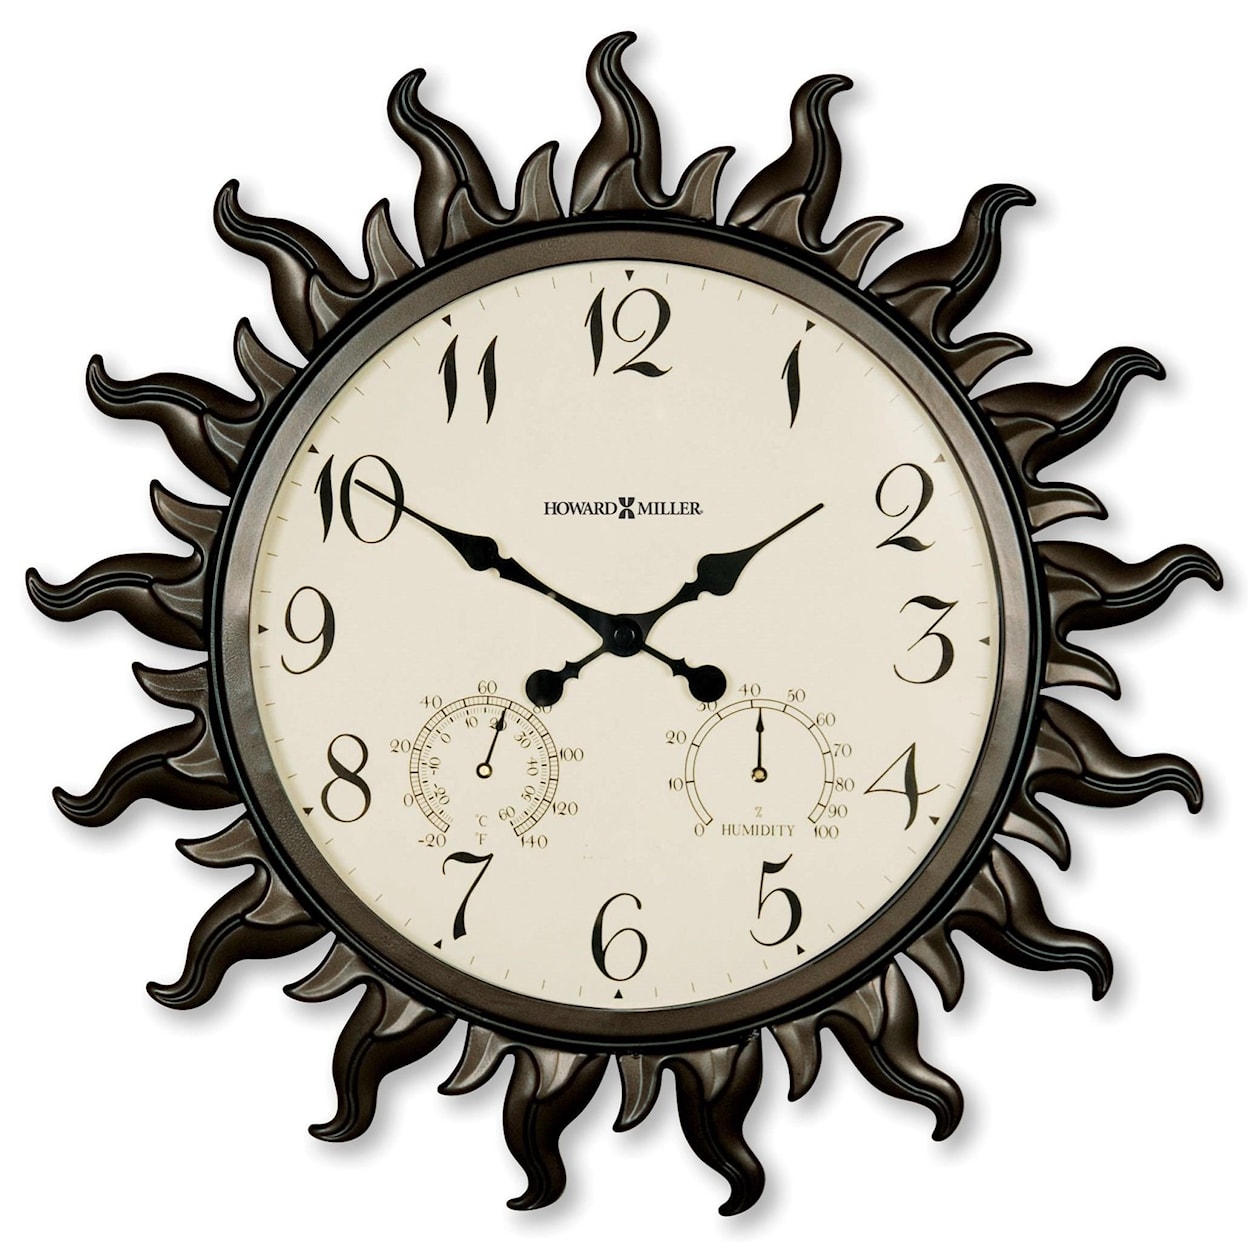 Howard Miller Wall Clocks Sunburst II Wall Clock